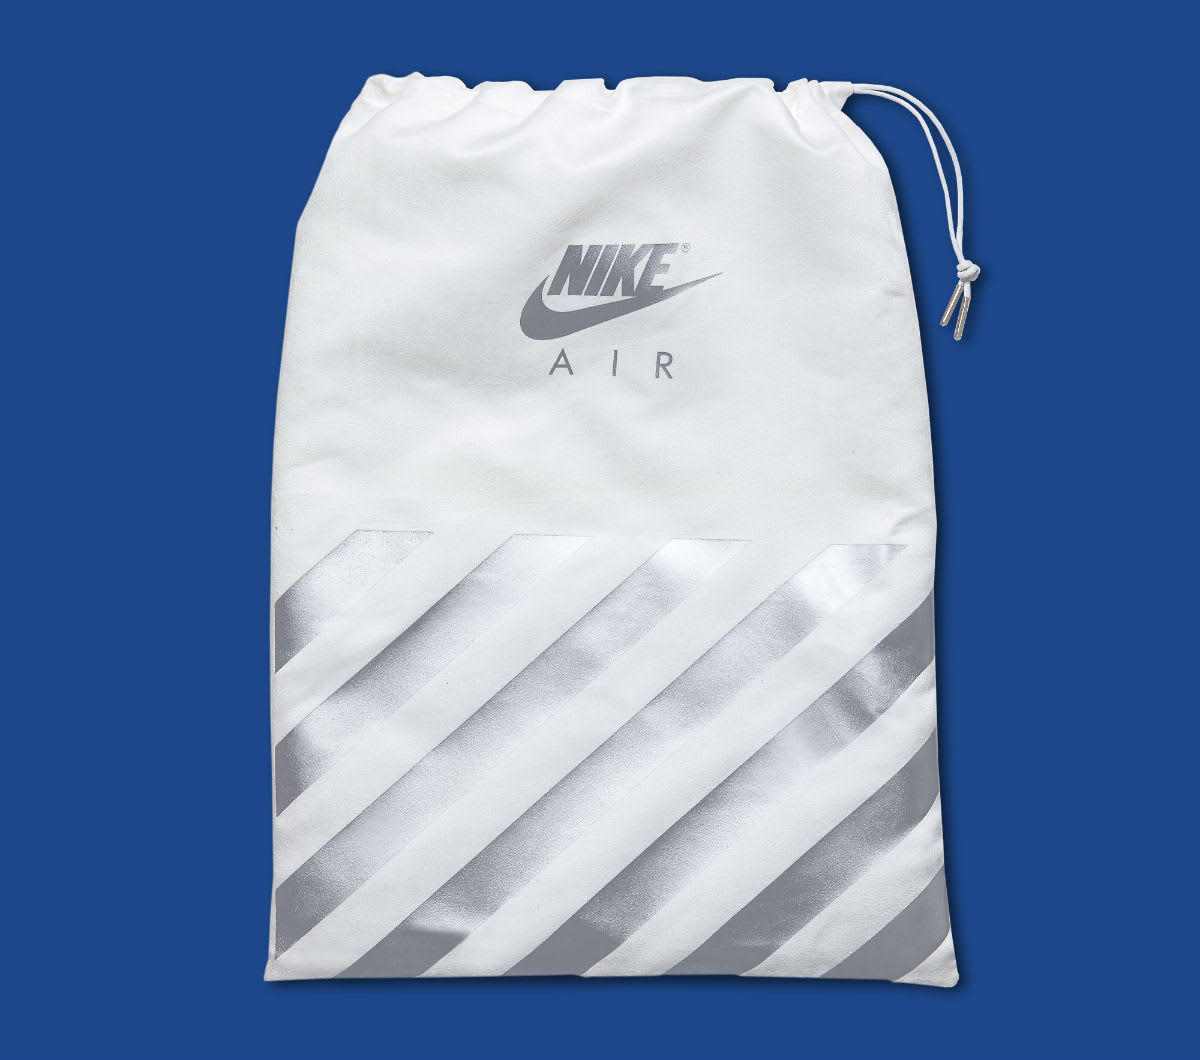 Nike Air Max 1 Anniversary Royal Release Date Bag 908375-101